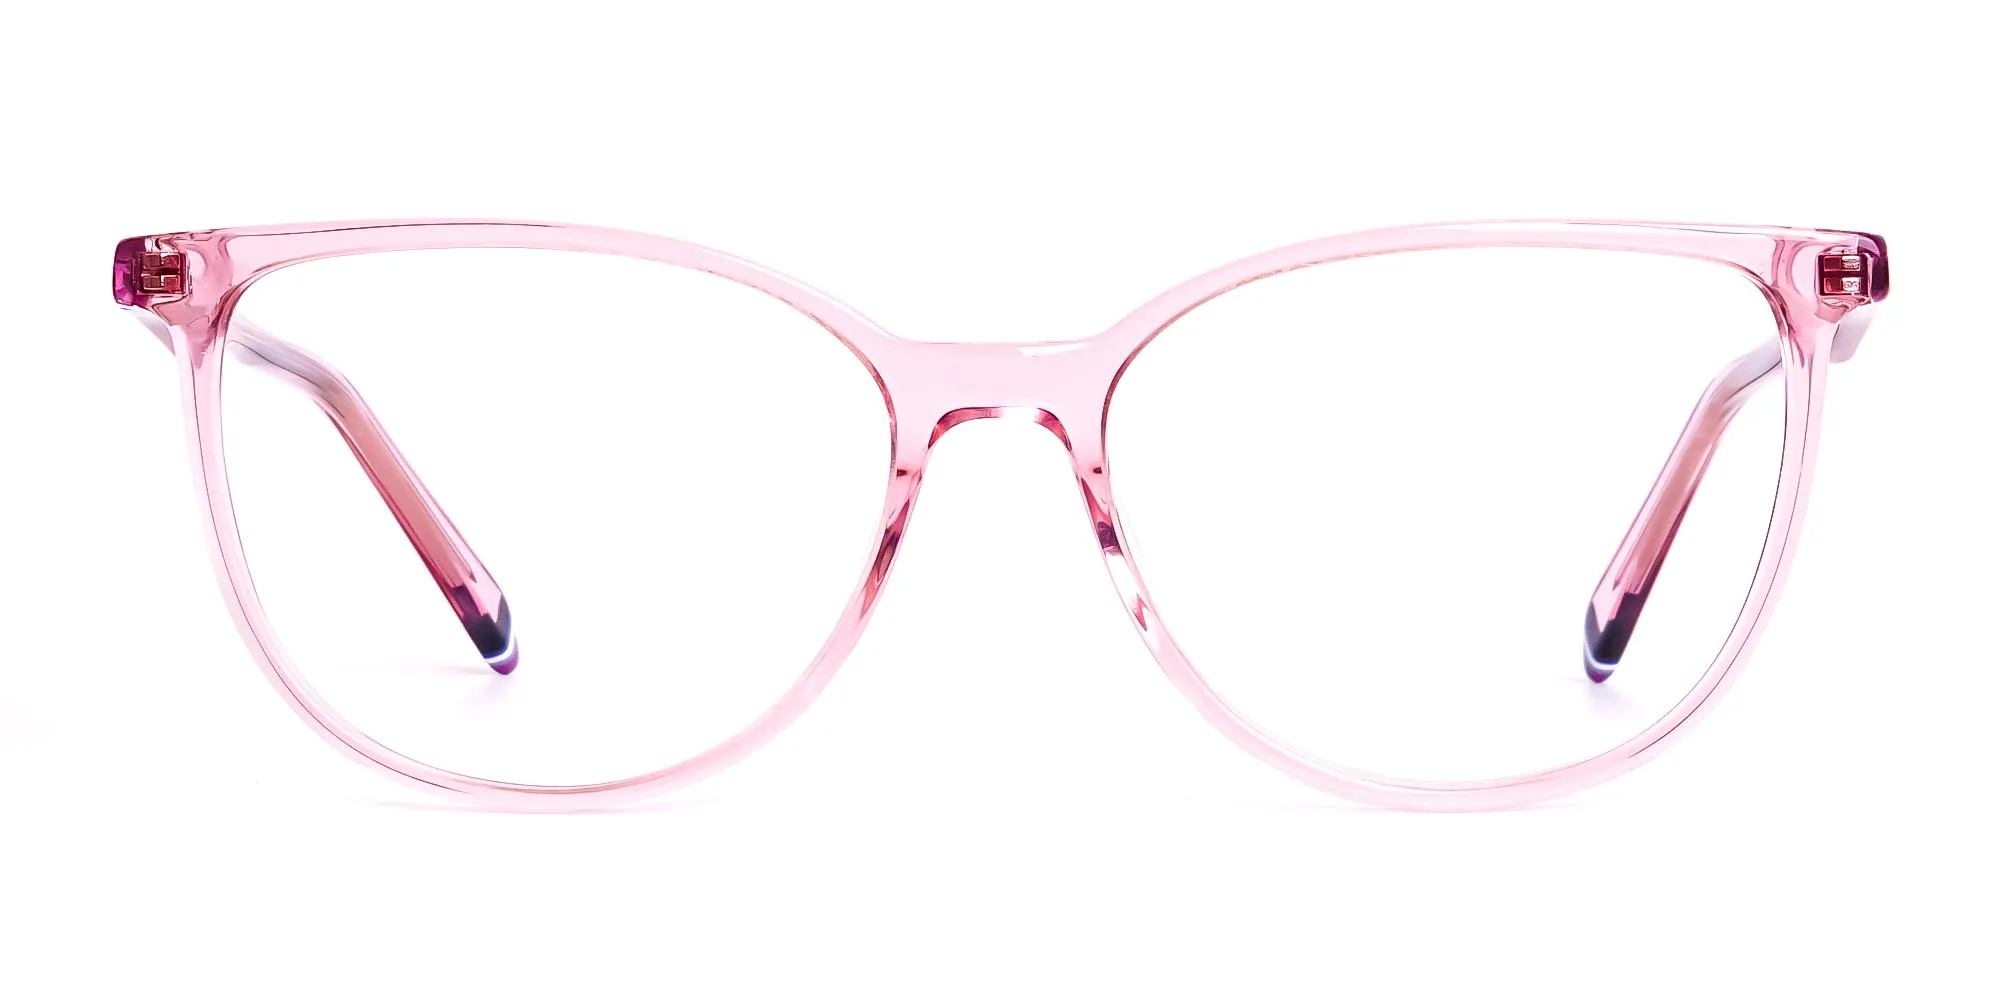 Crystal-Pink-transparent-Cat-eye-Glasses-Frames-2